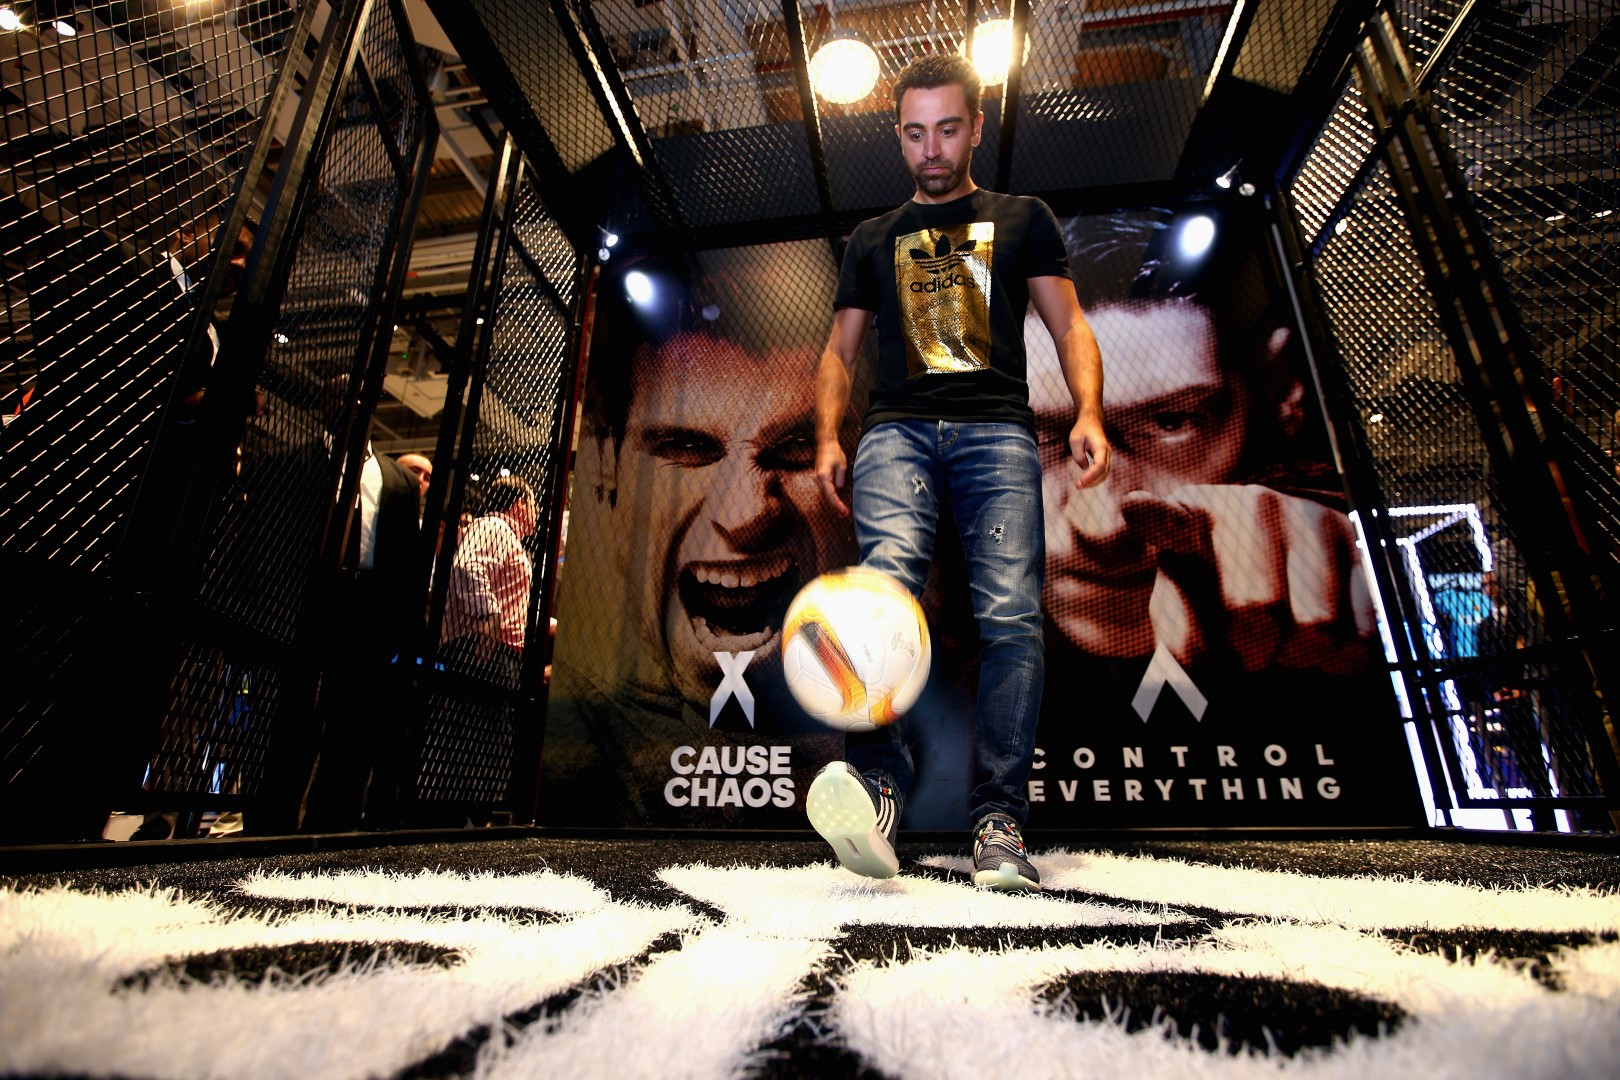 adidas Dubai store: Xavi Hernandez incontra i fans e presenta le scarpe da calcio Primeknit X e Ace